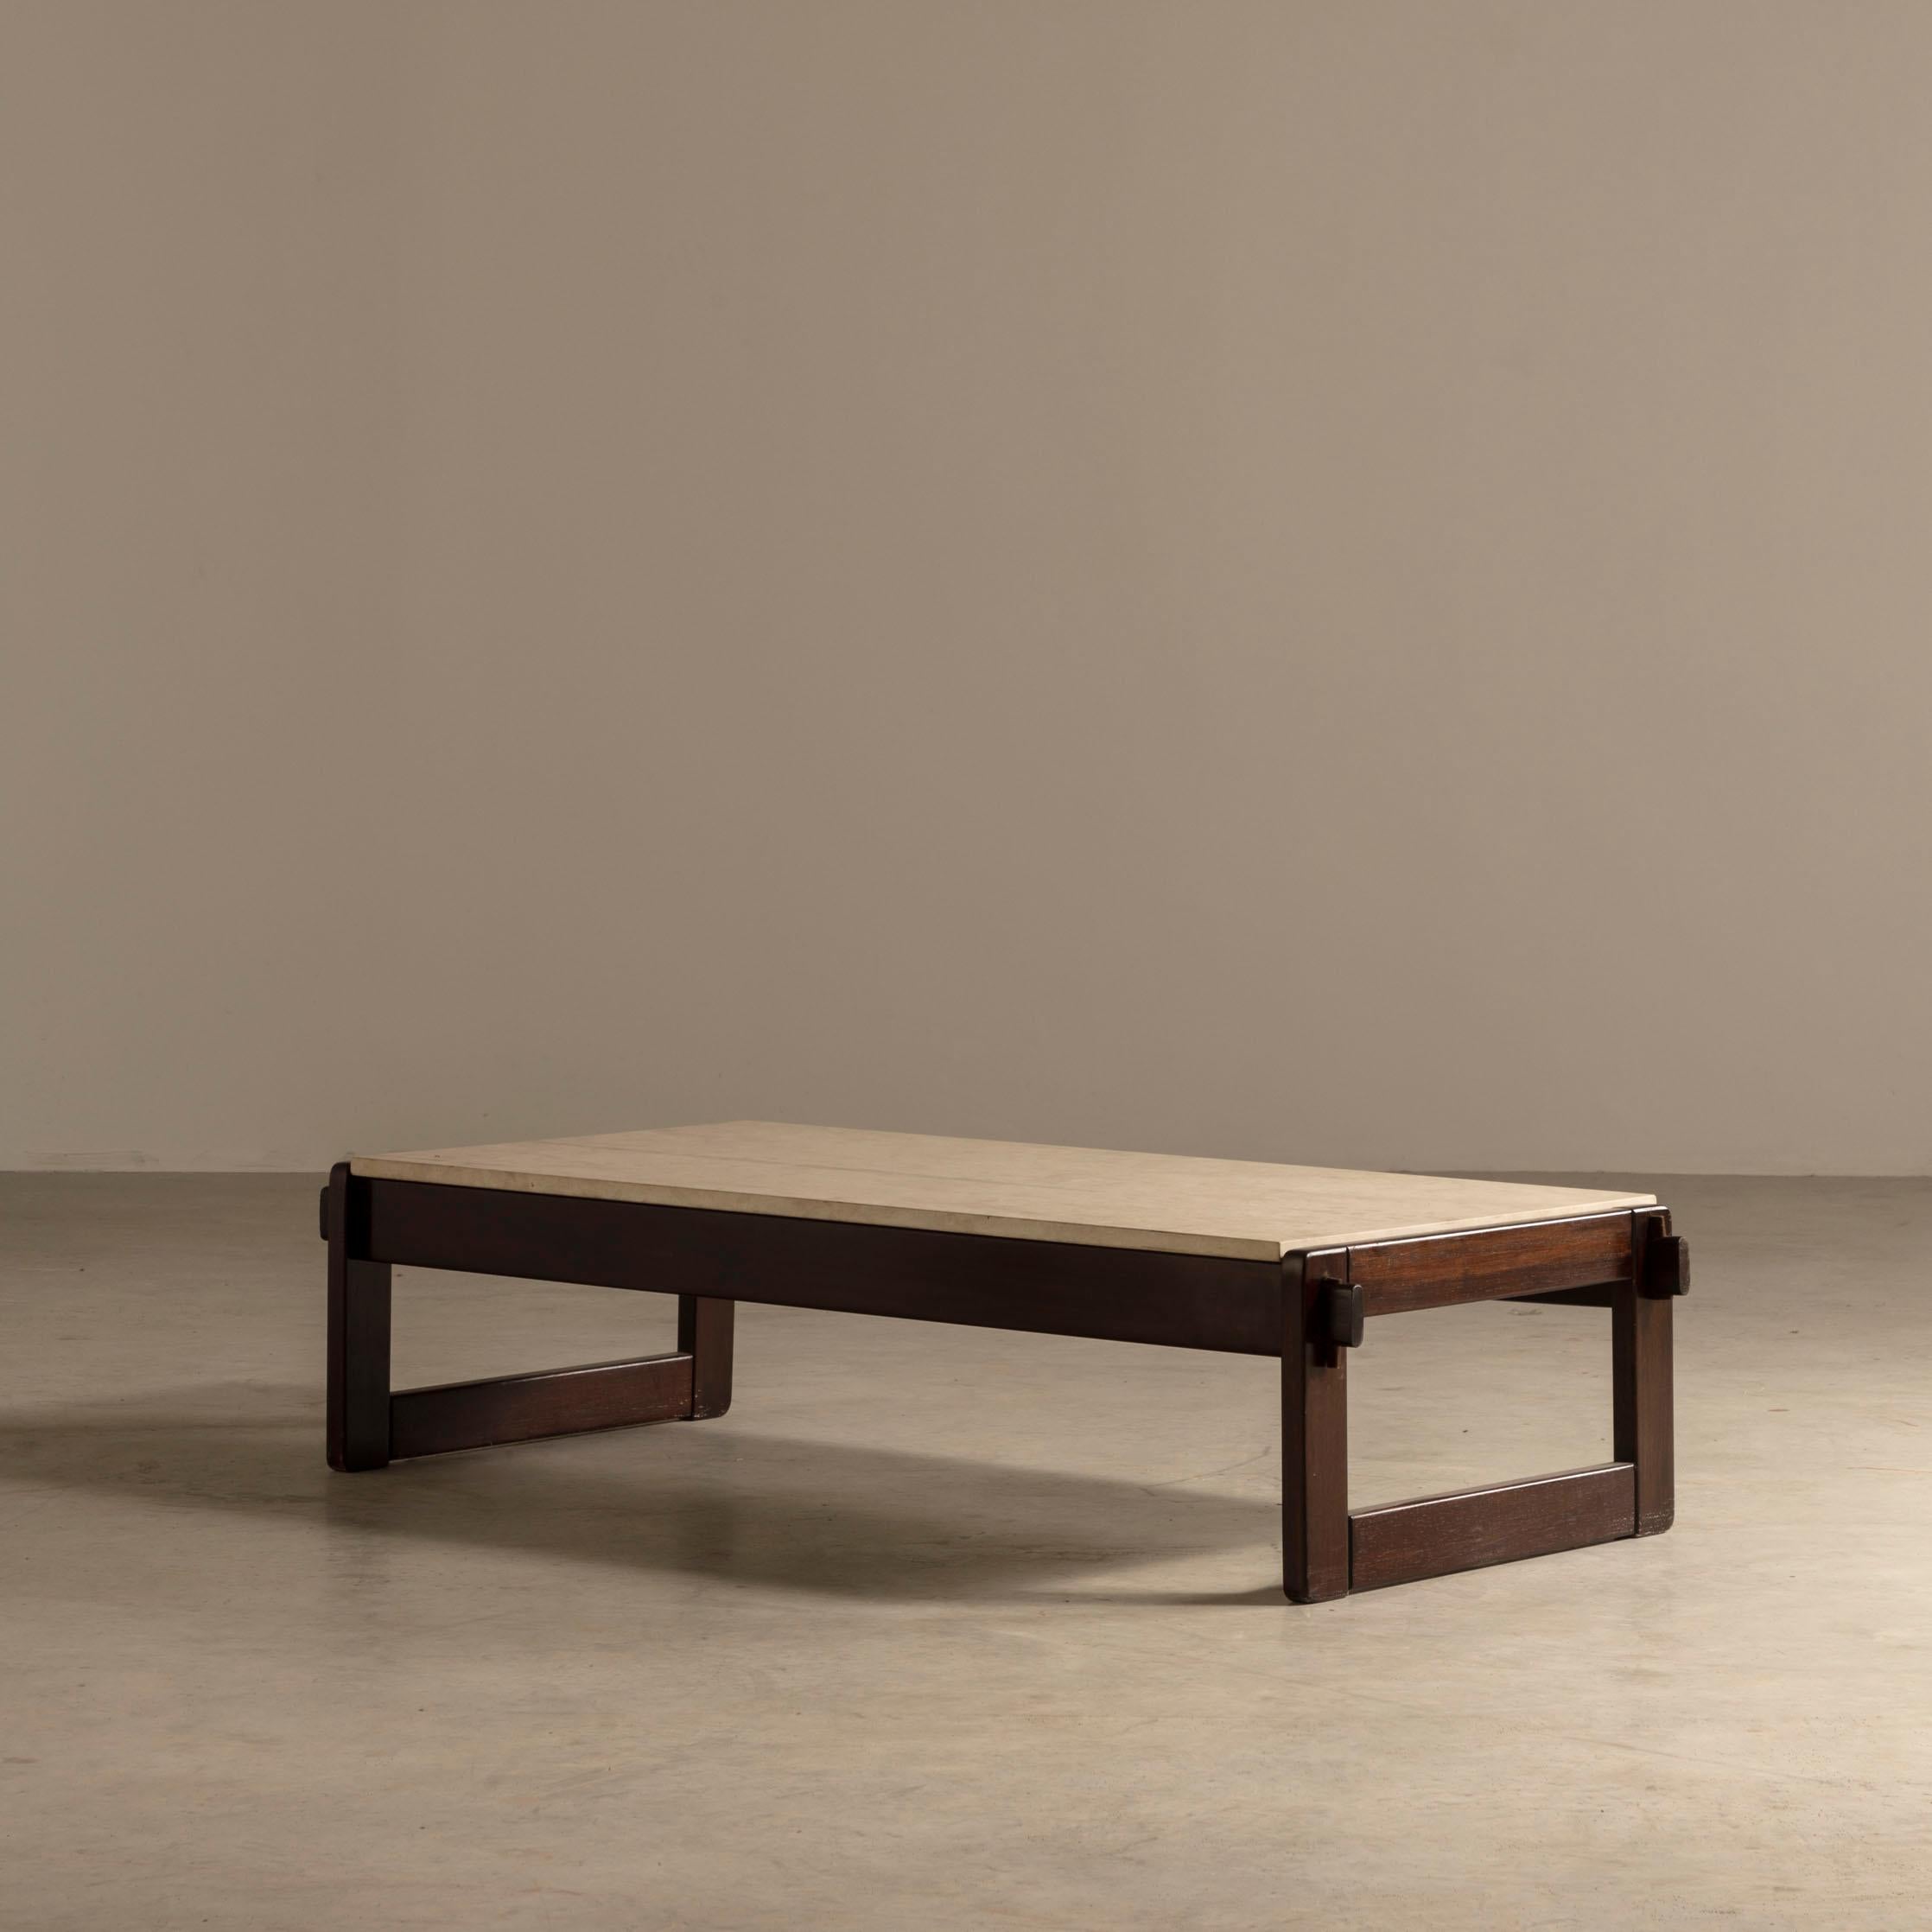 La table centrale MP79, conçue par l'illustre Percival Lafer, est un parangon du design brésilien moderne du milieu du siècle, reflétant une époque où la fonctionnalité rencontrait l'élégance dans une danse sans effort. La surface de la table, une